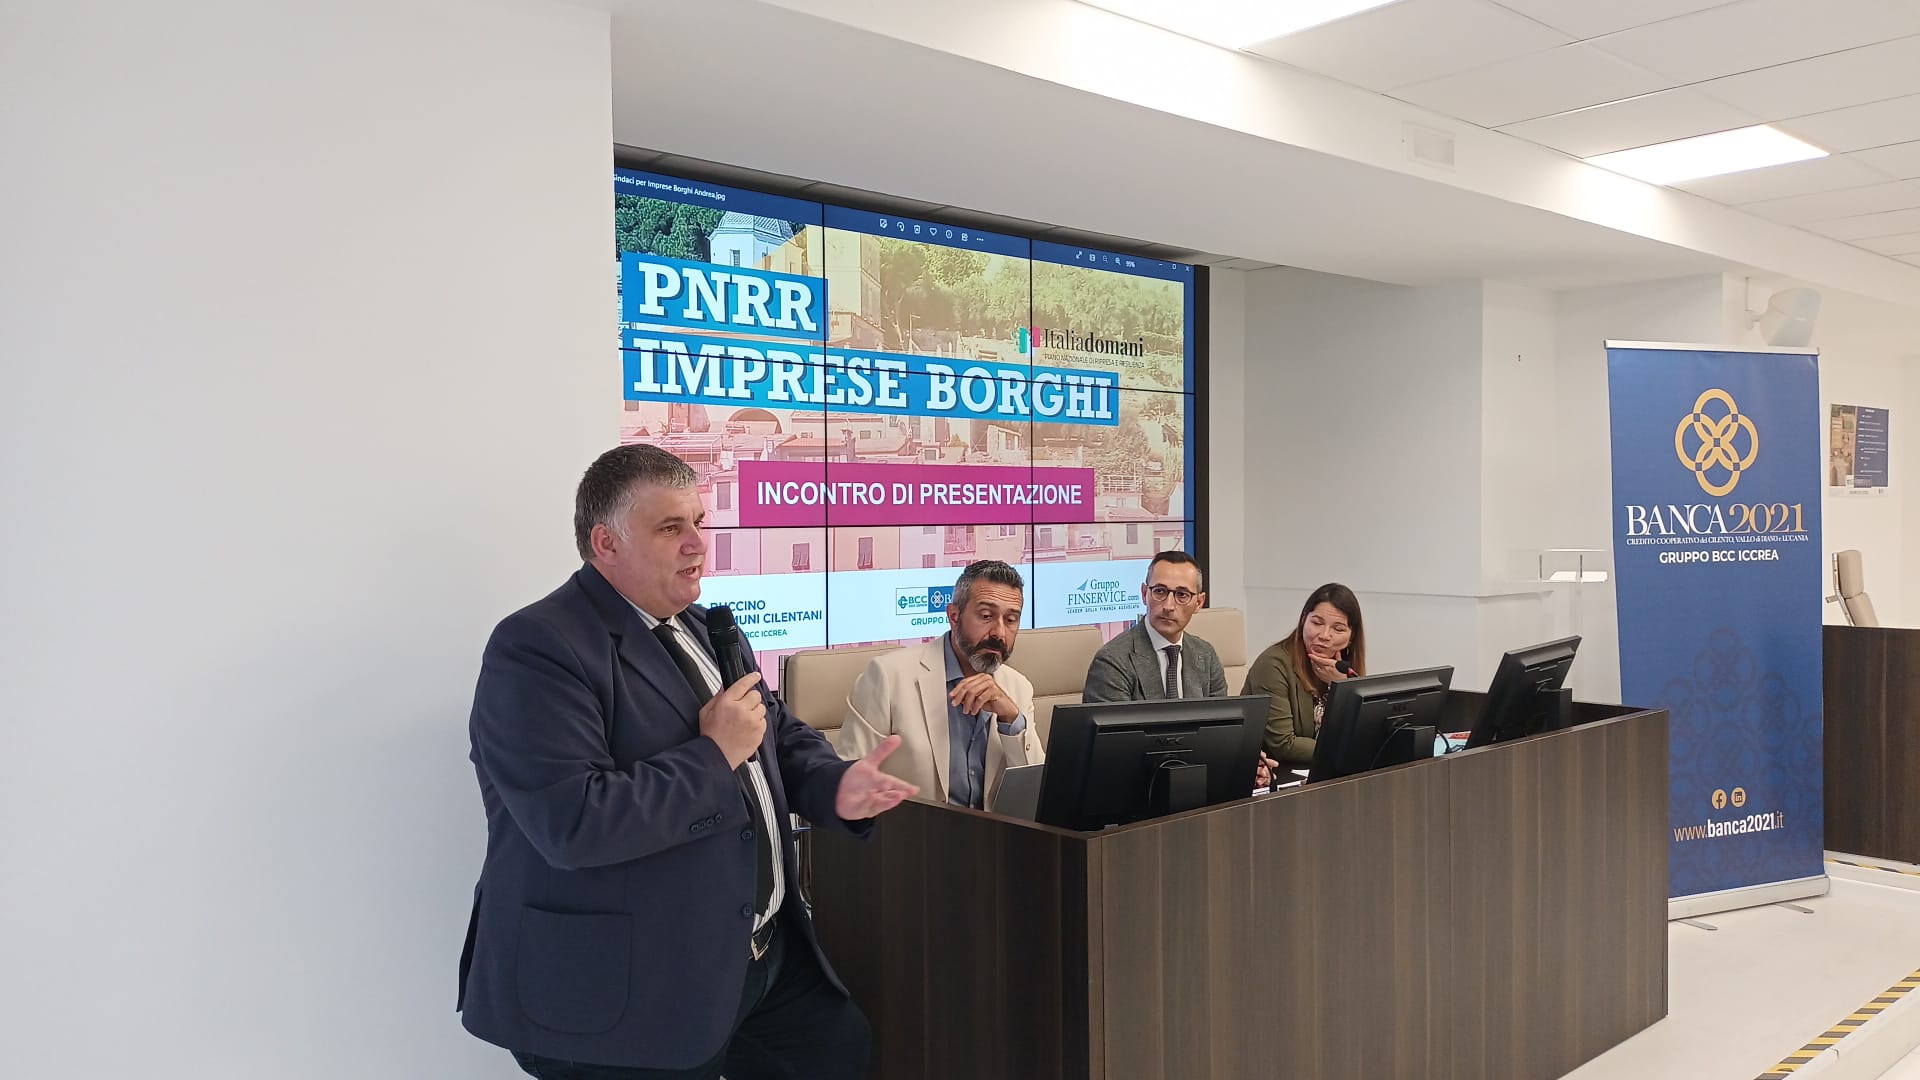 Imprese borghi e Pnrr: a Vallo della Lucania iniziativa congiunta di Banca 2021 e Bcc Buccino e Comuni cilentani